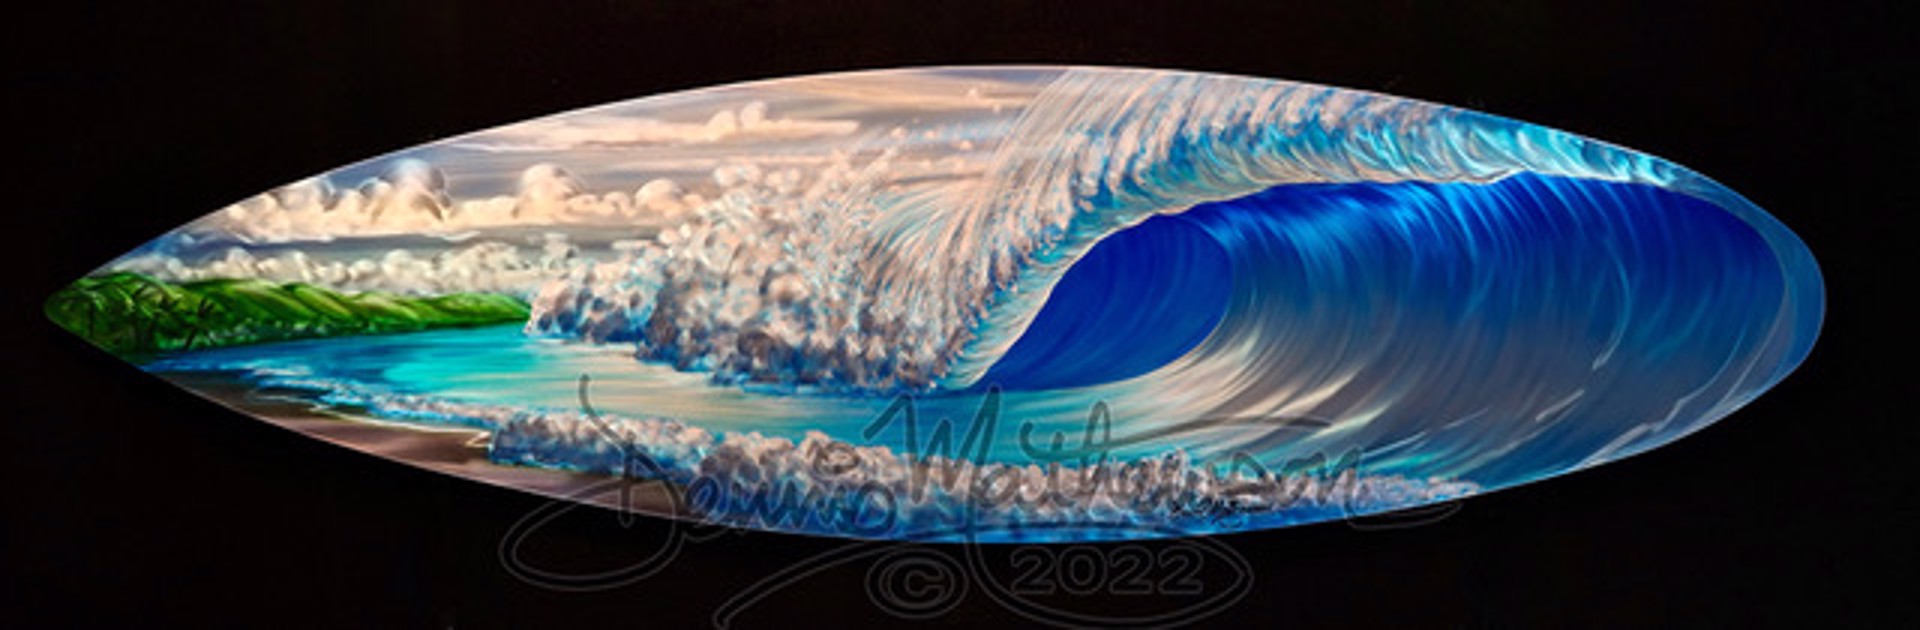 Aquamarine by Dennis Mathewson